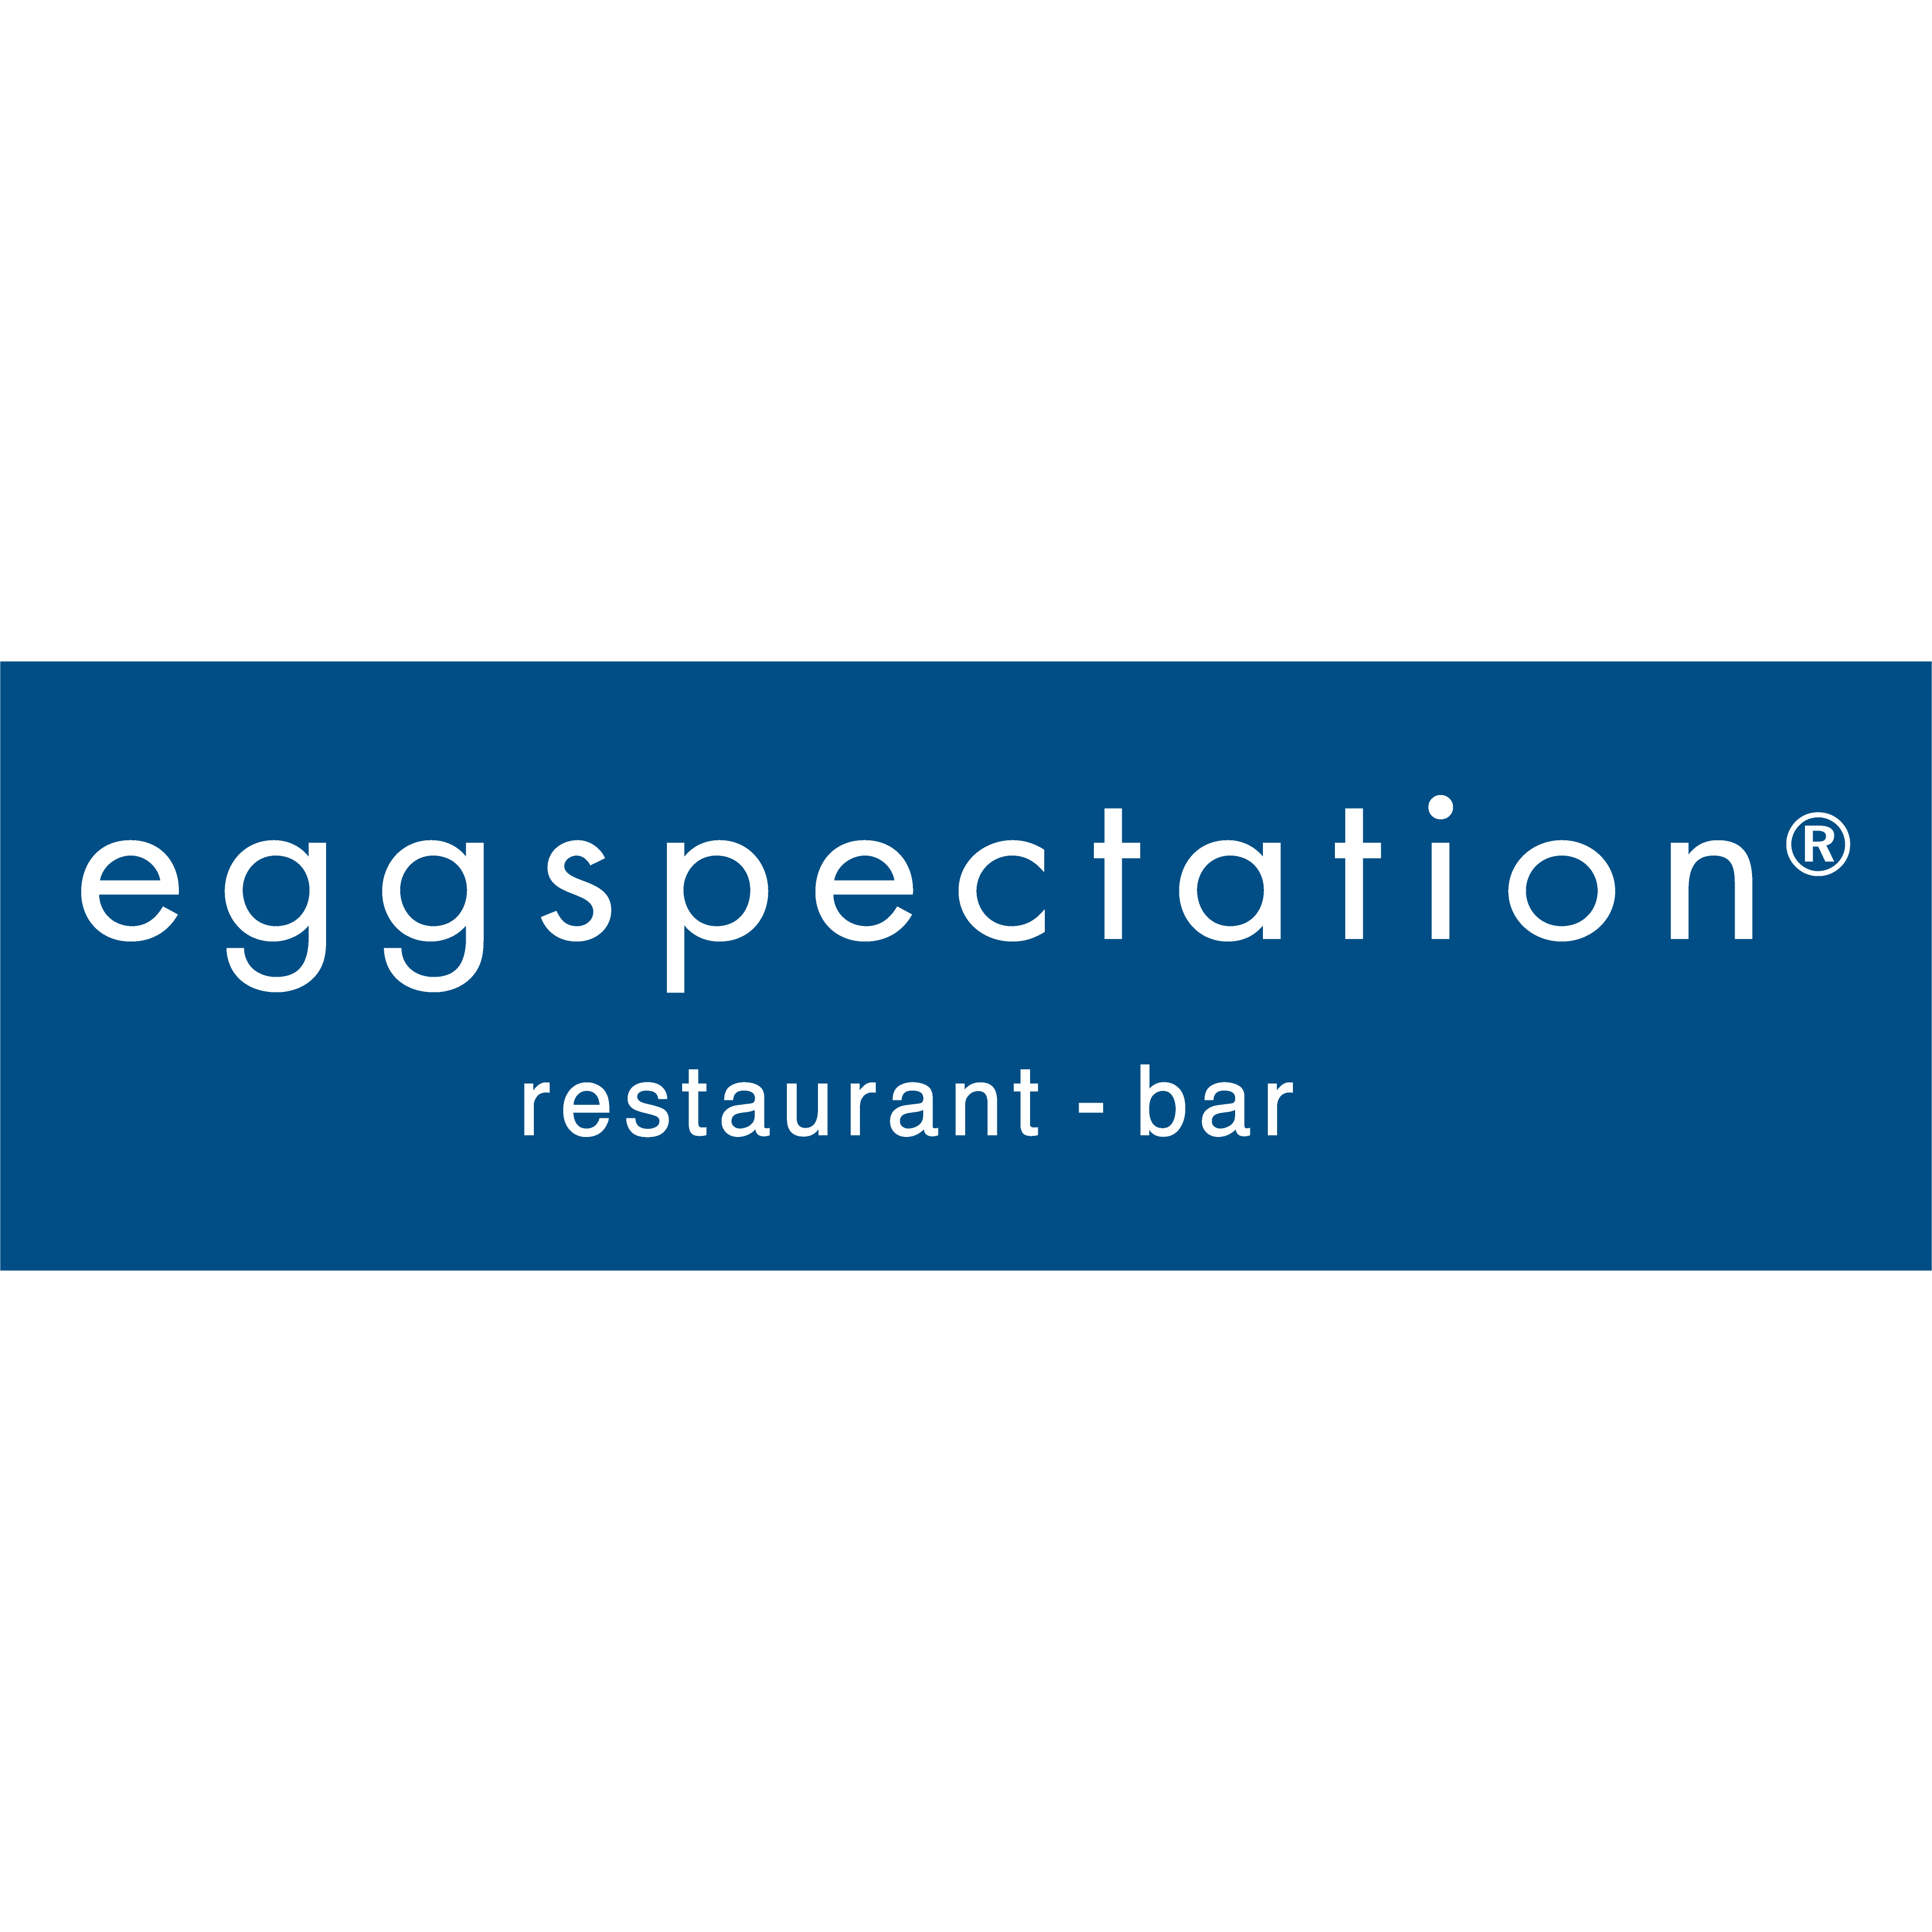 eggspectation - Chantilly, VA